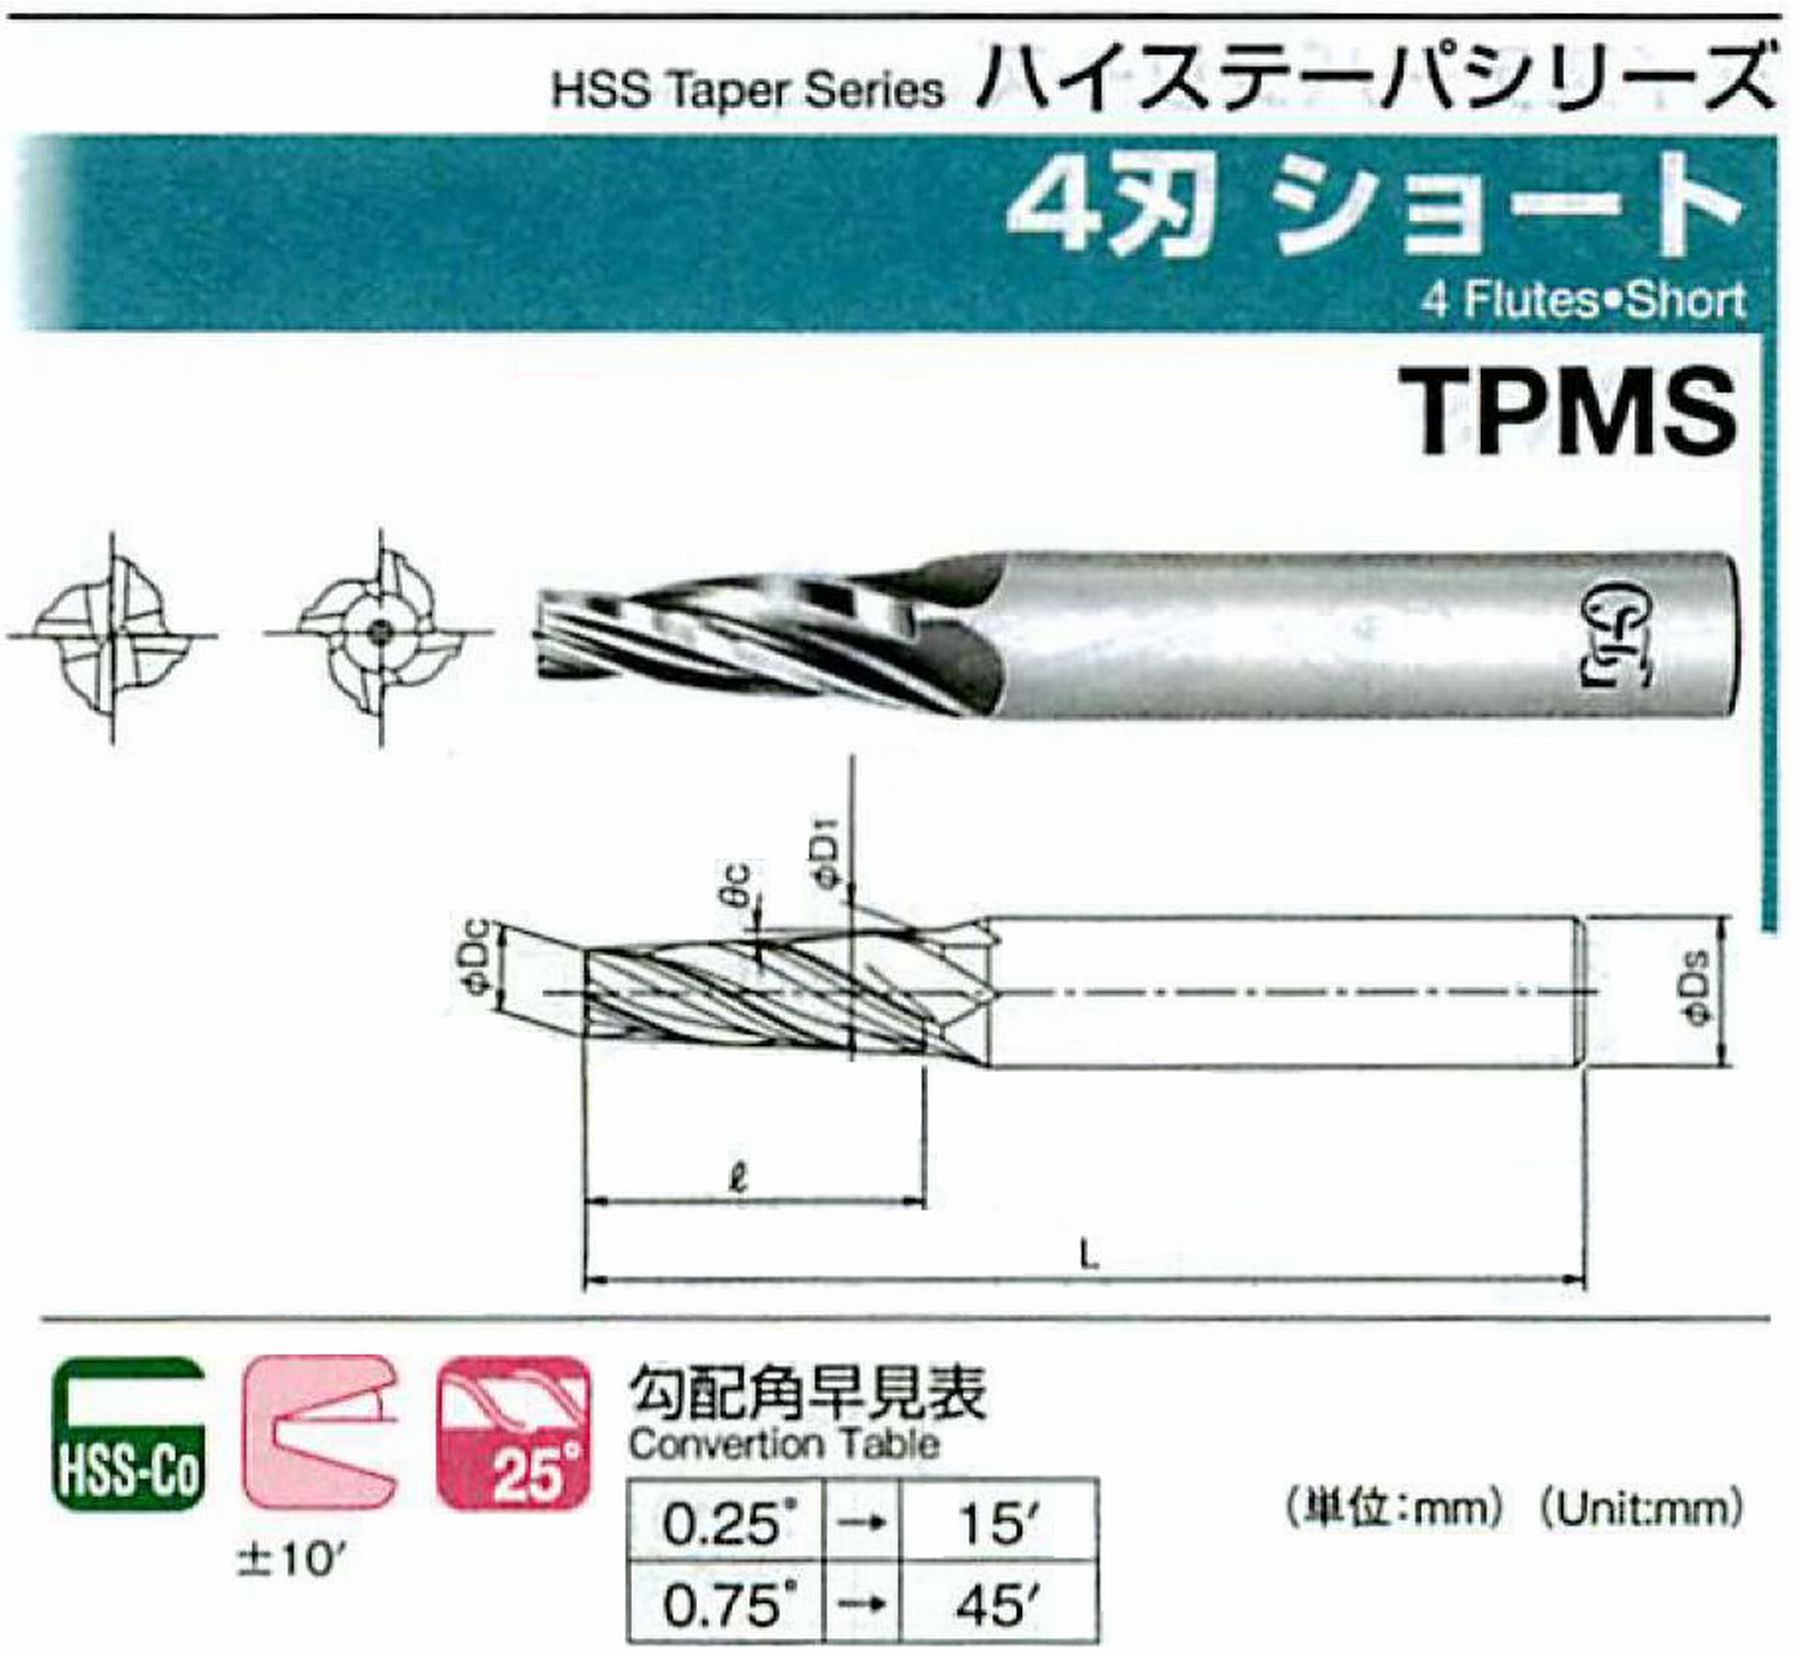 オーエスジー/OSG 4刃 ショート TPMS 外径×刃部テーパ半角2.5×2.5°全長62 刃長18 シャンク径6mm 大端径4.07